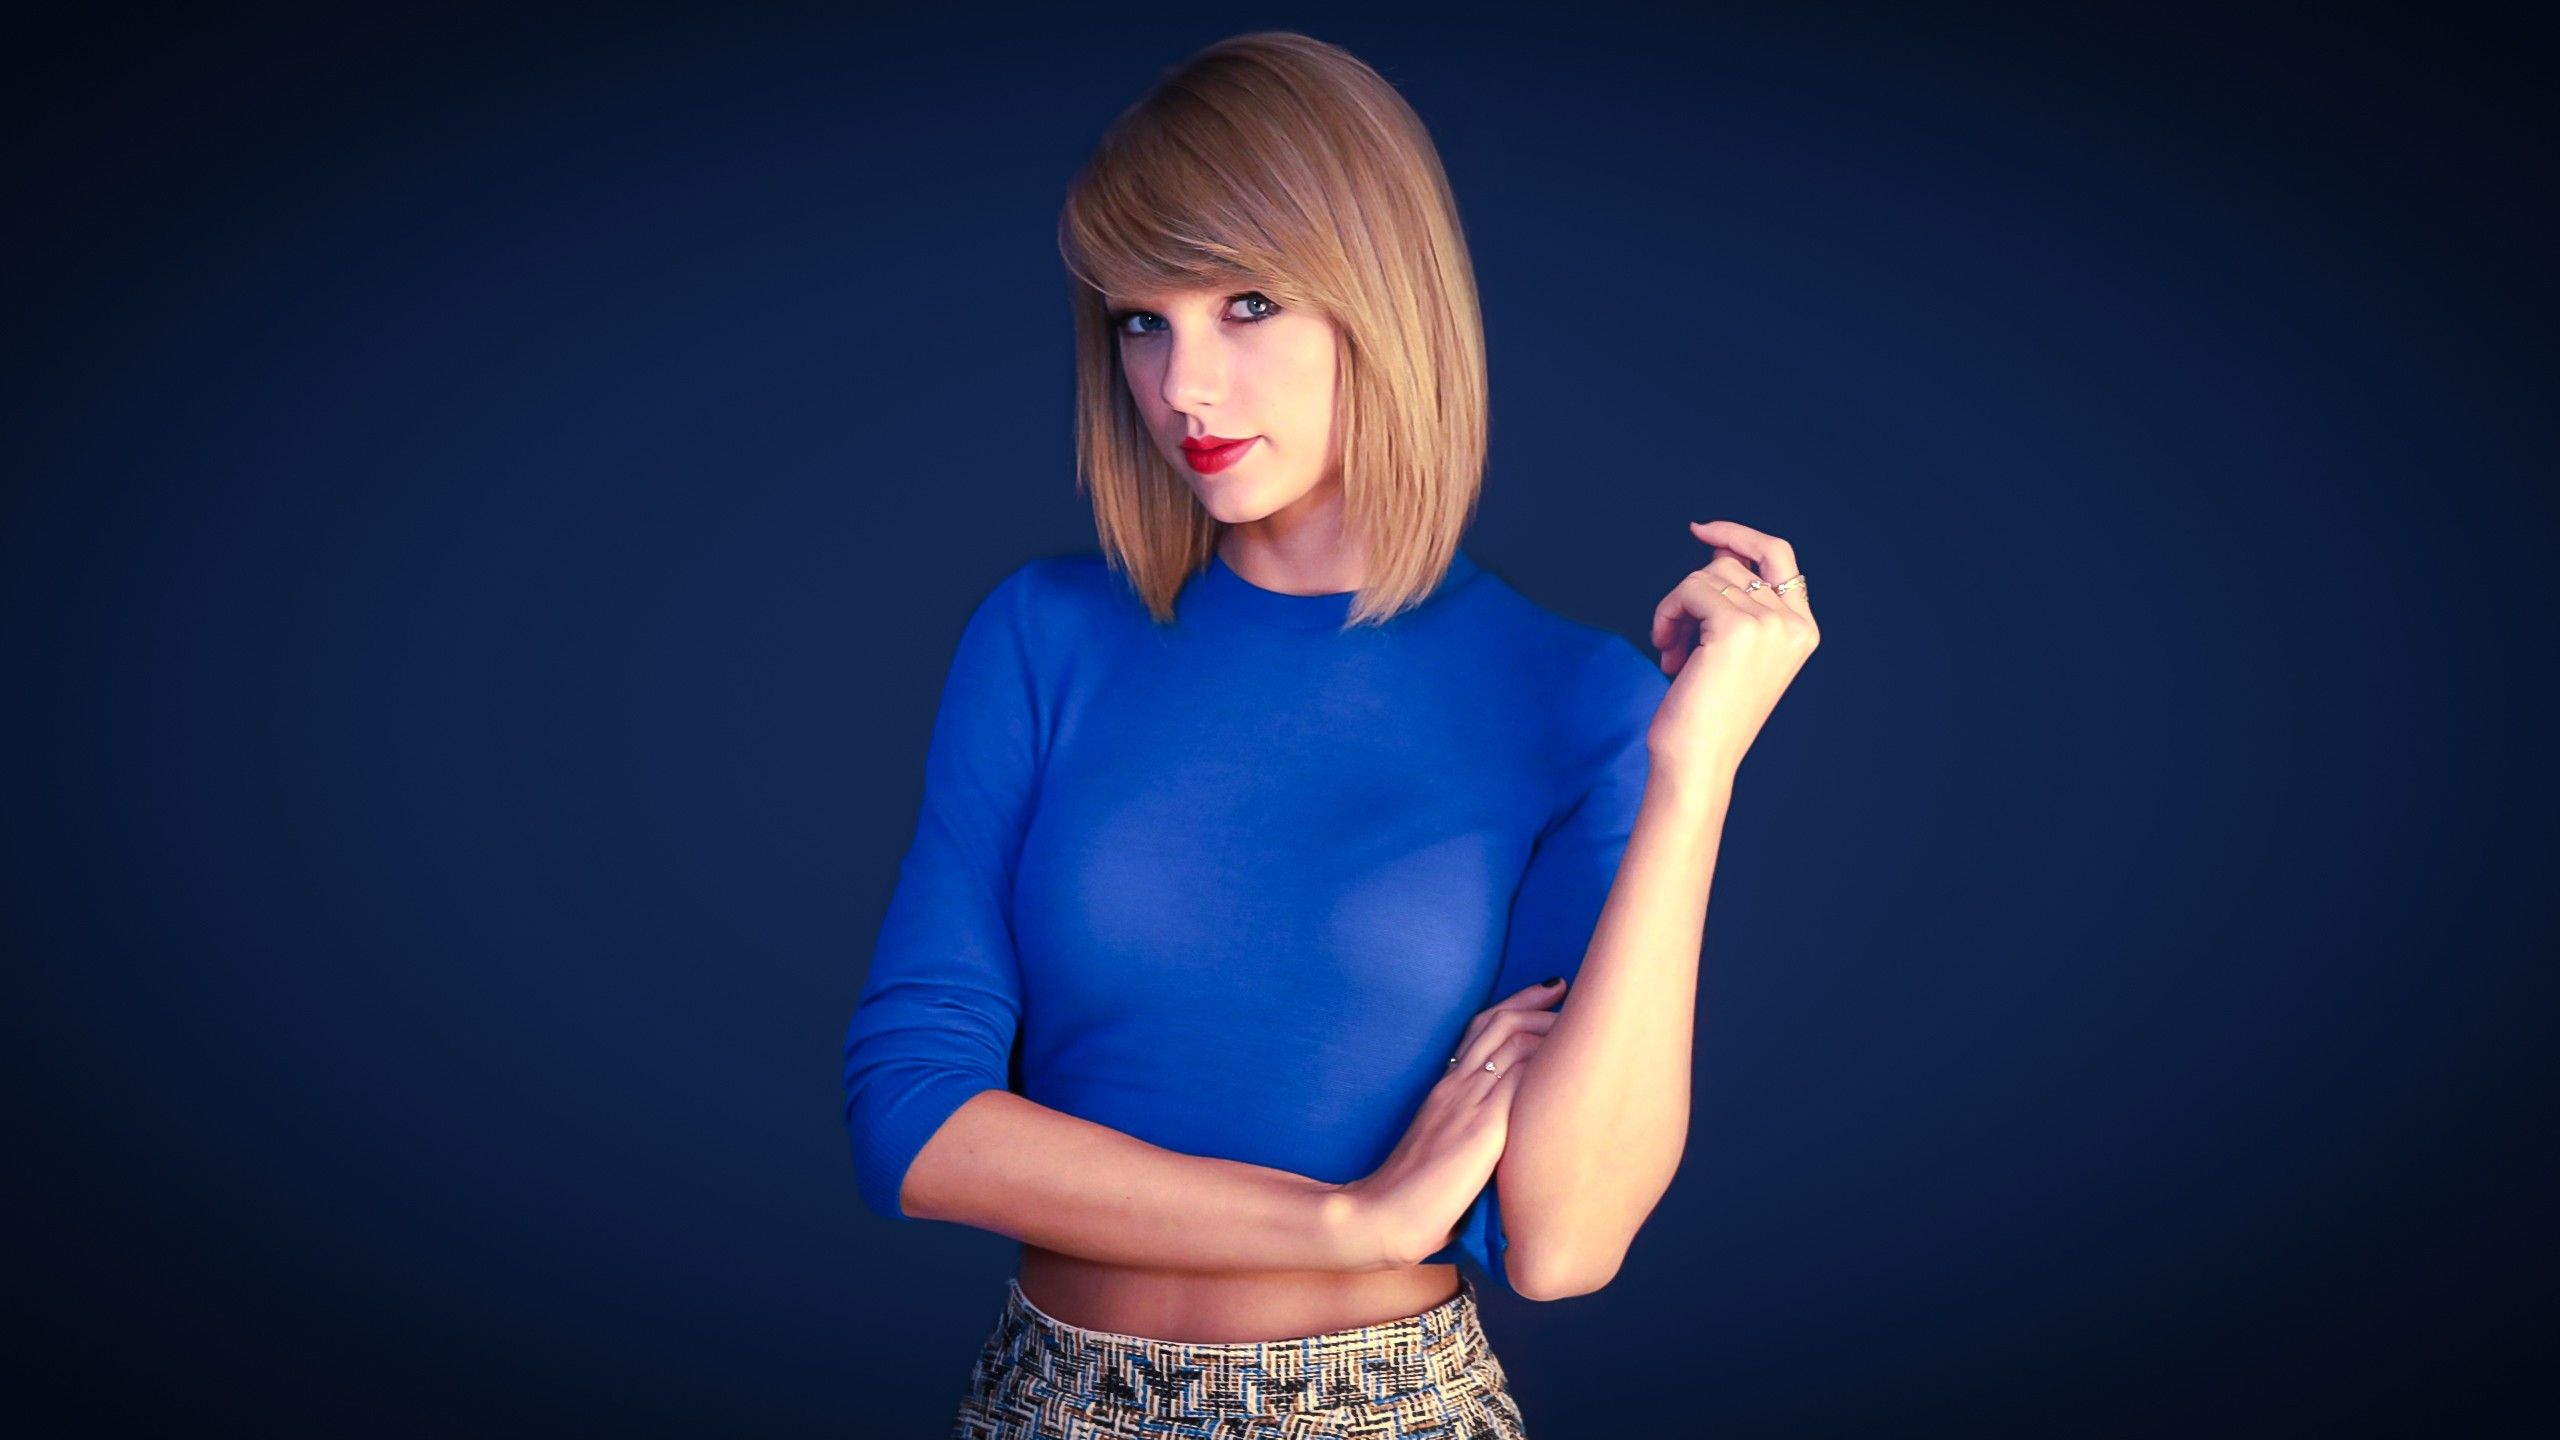 Taylor Swift HD Wallpaper | 1920x1080 | ID:53814